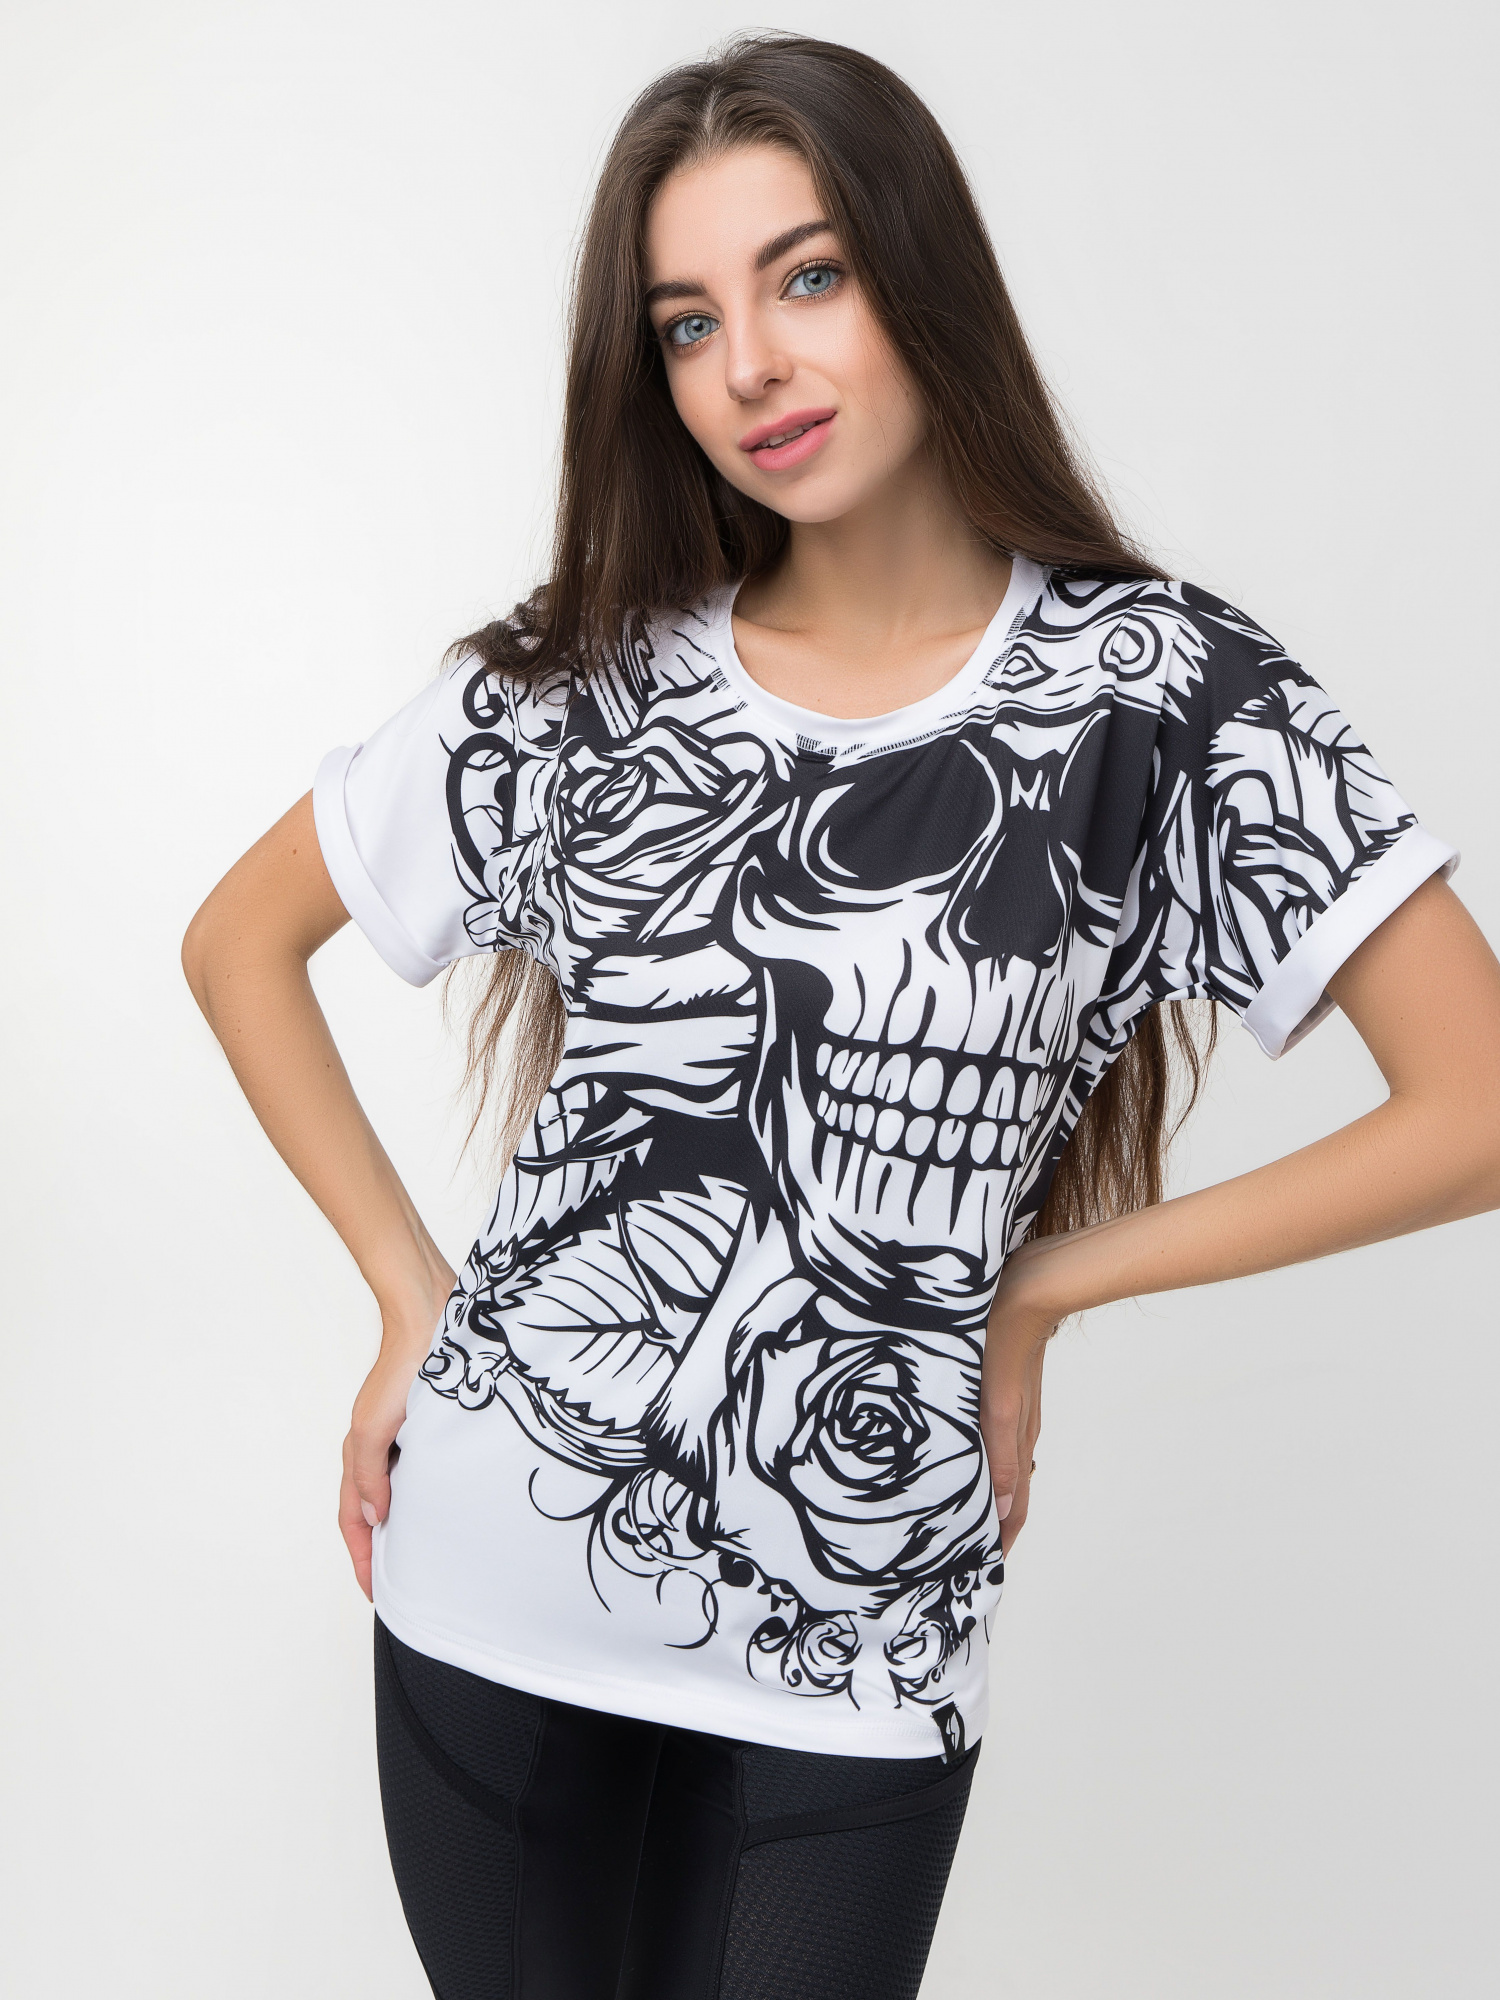 Bona Fide: T-Shirt Loose "Immortal Dark "